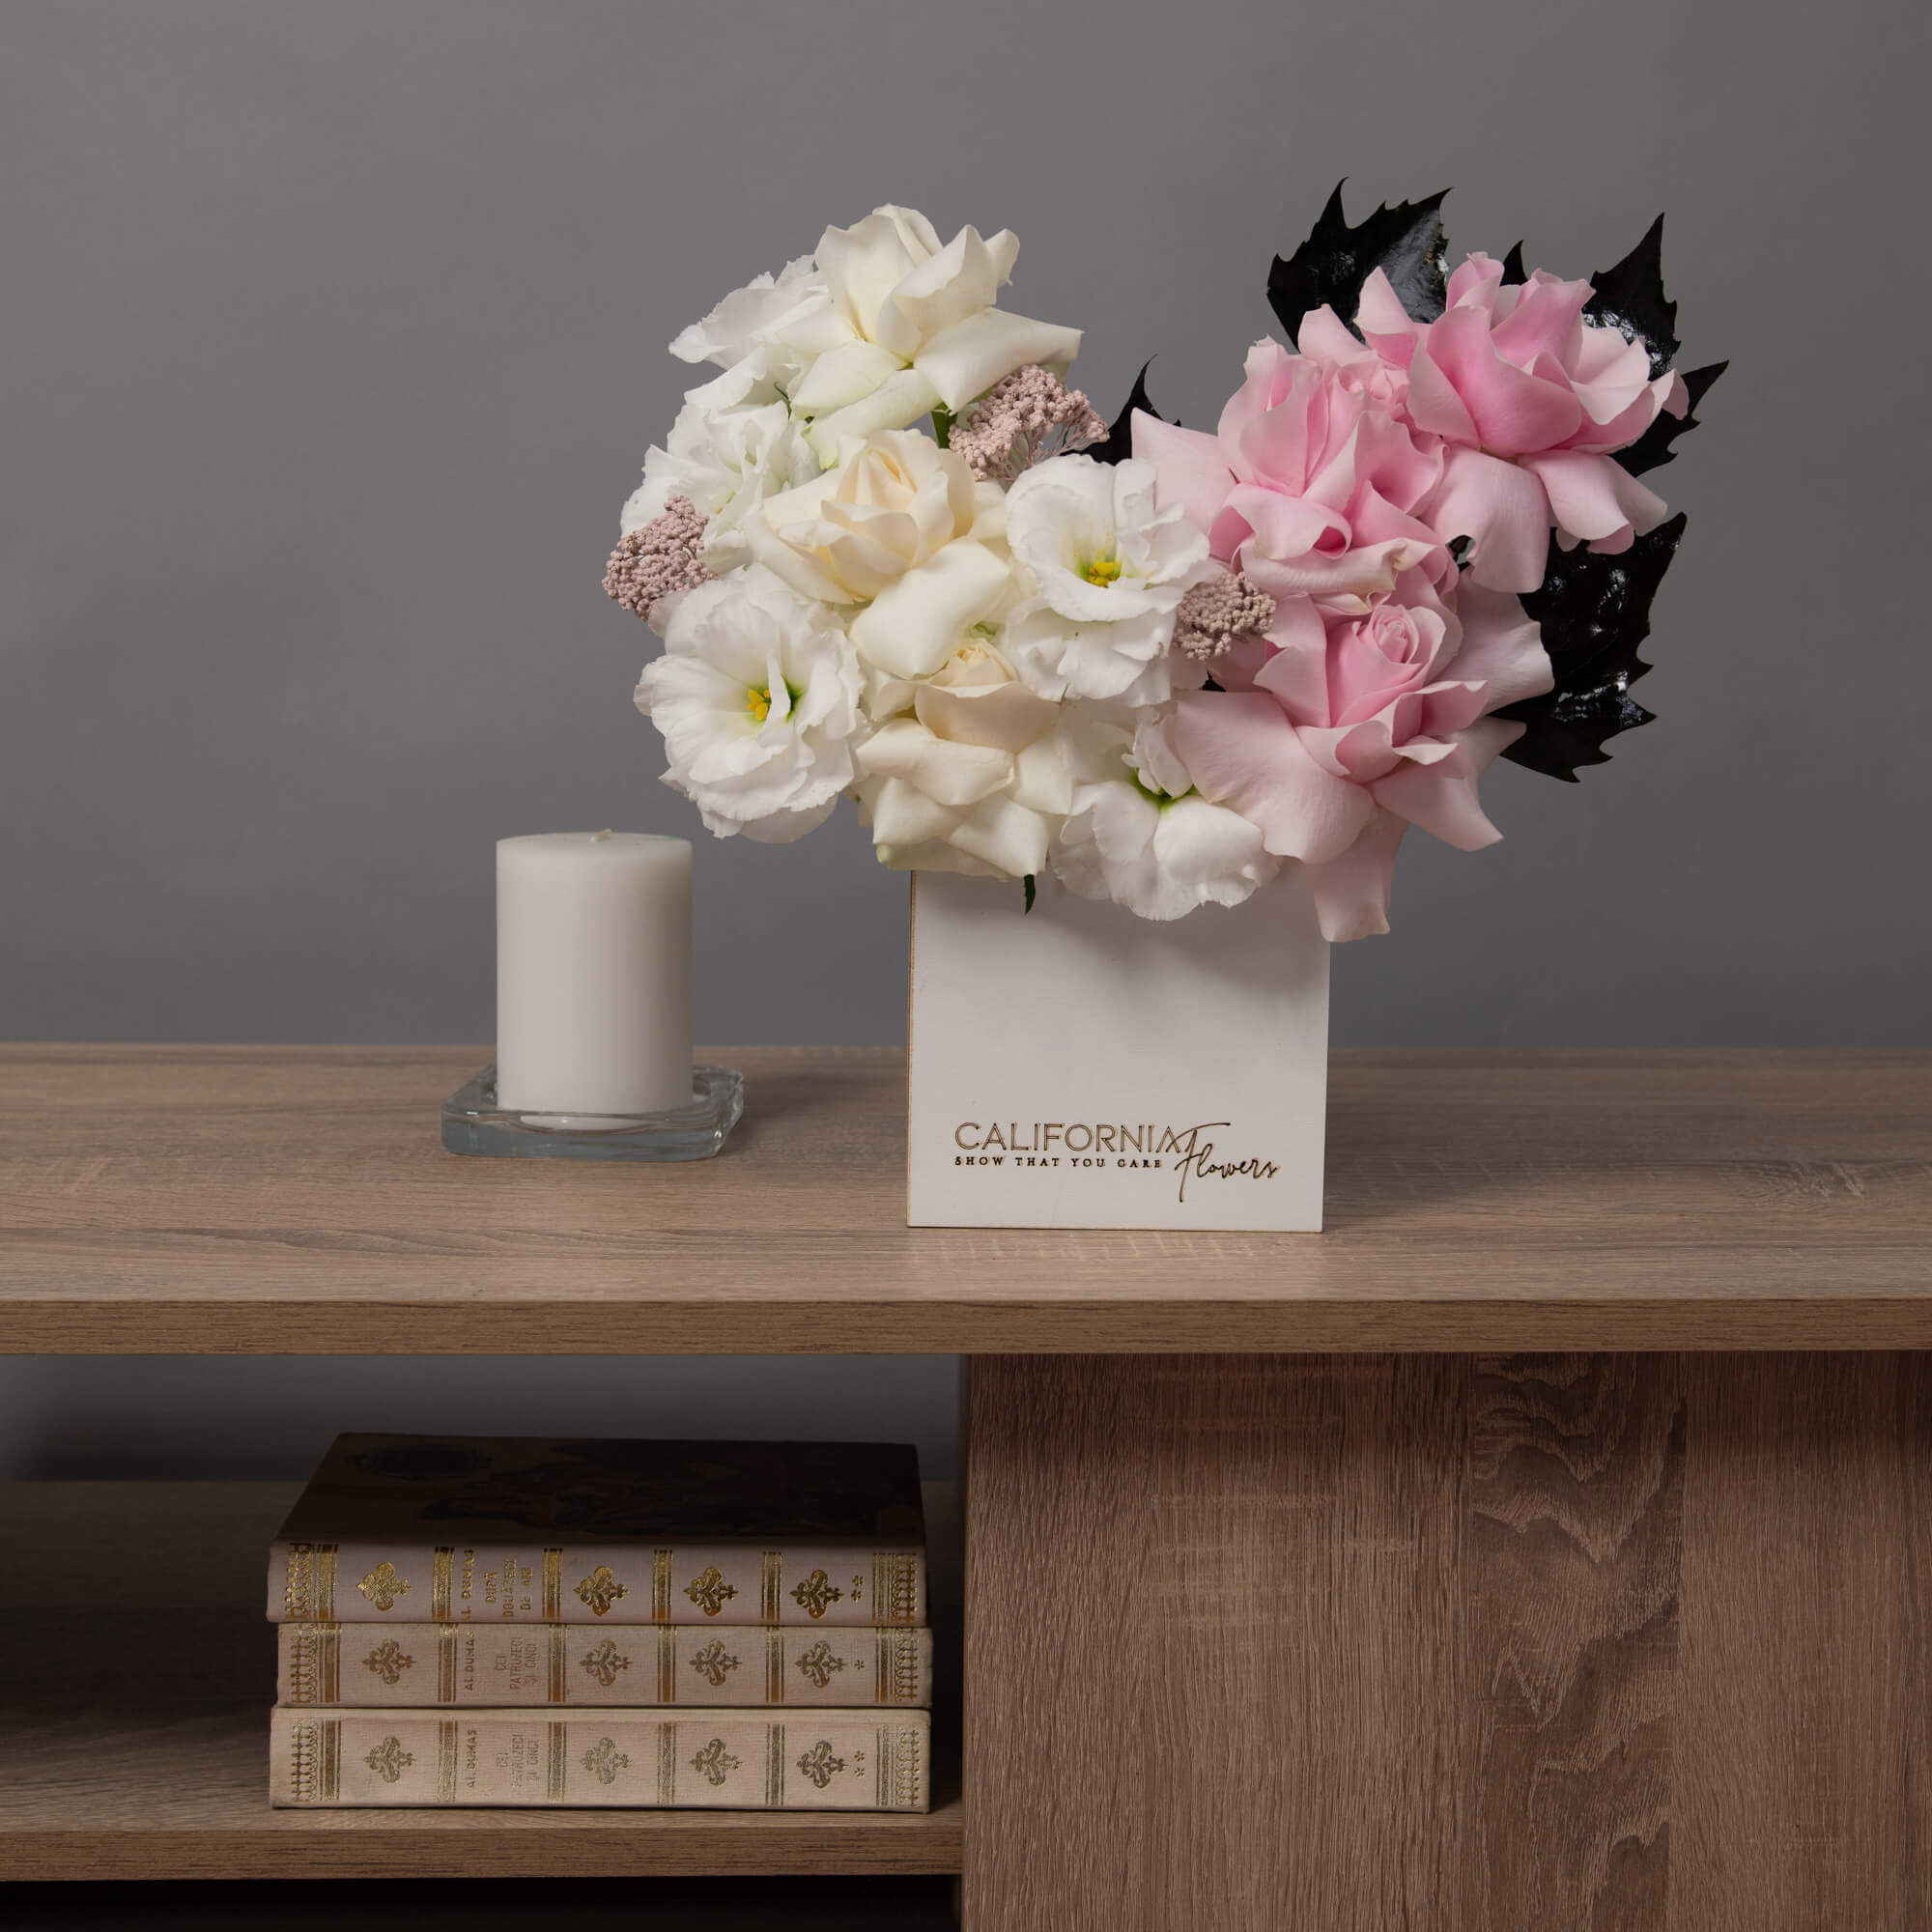 Aranjament floral in cutie cu lisianthus si trandafiri albi si roz, 3